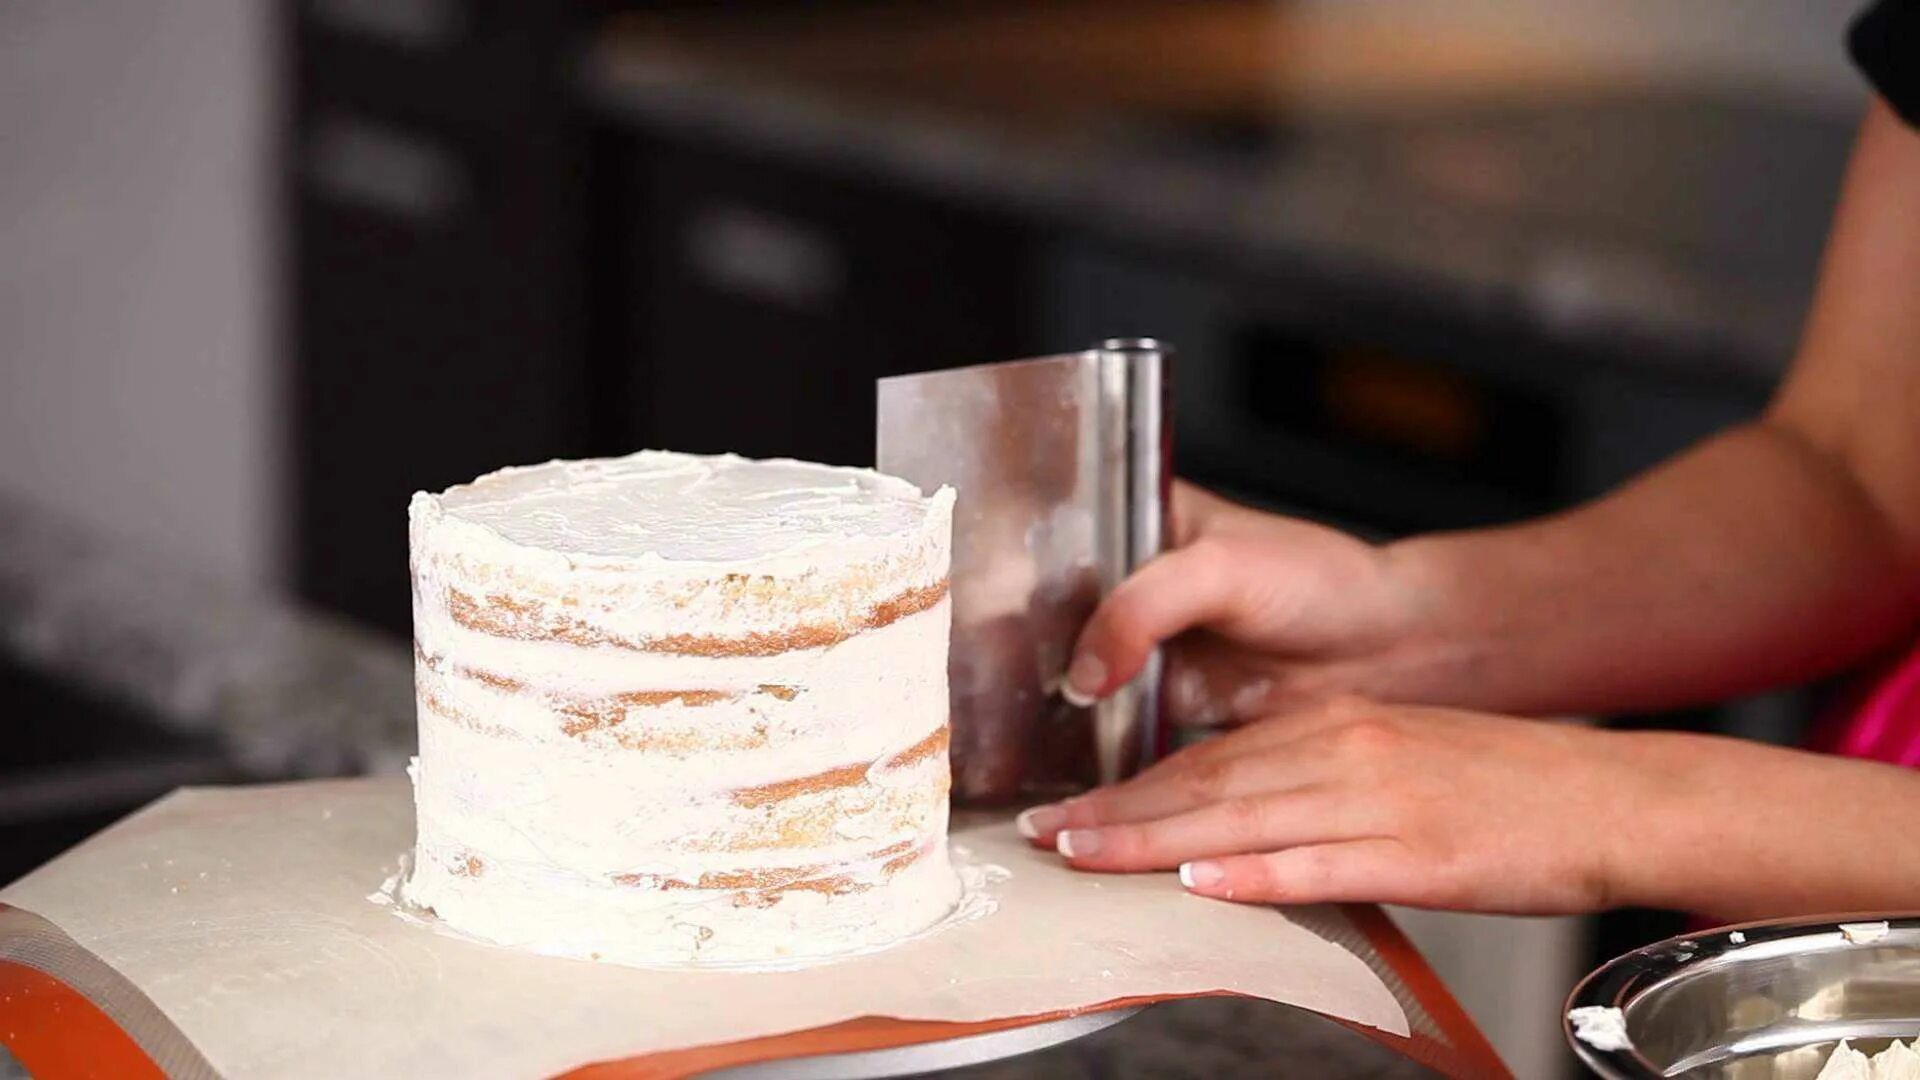 Выровнять торт кремом чиз. Крем-чиз для торта для выравнивания. Торт обмазанный кремом. Выравниватель крема на торте. Выравнивание и украшение торта кремом чиз